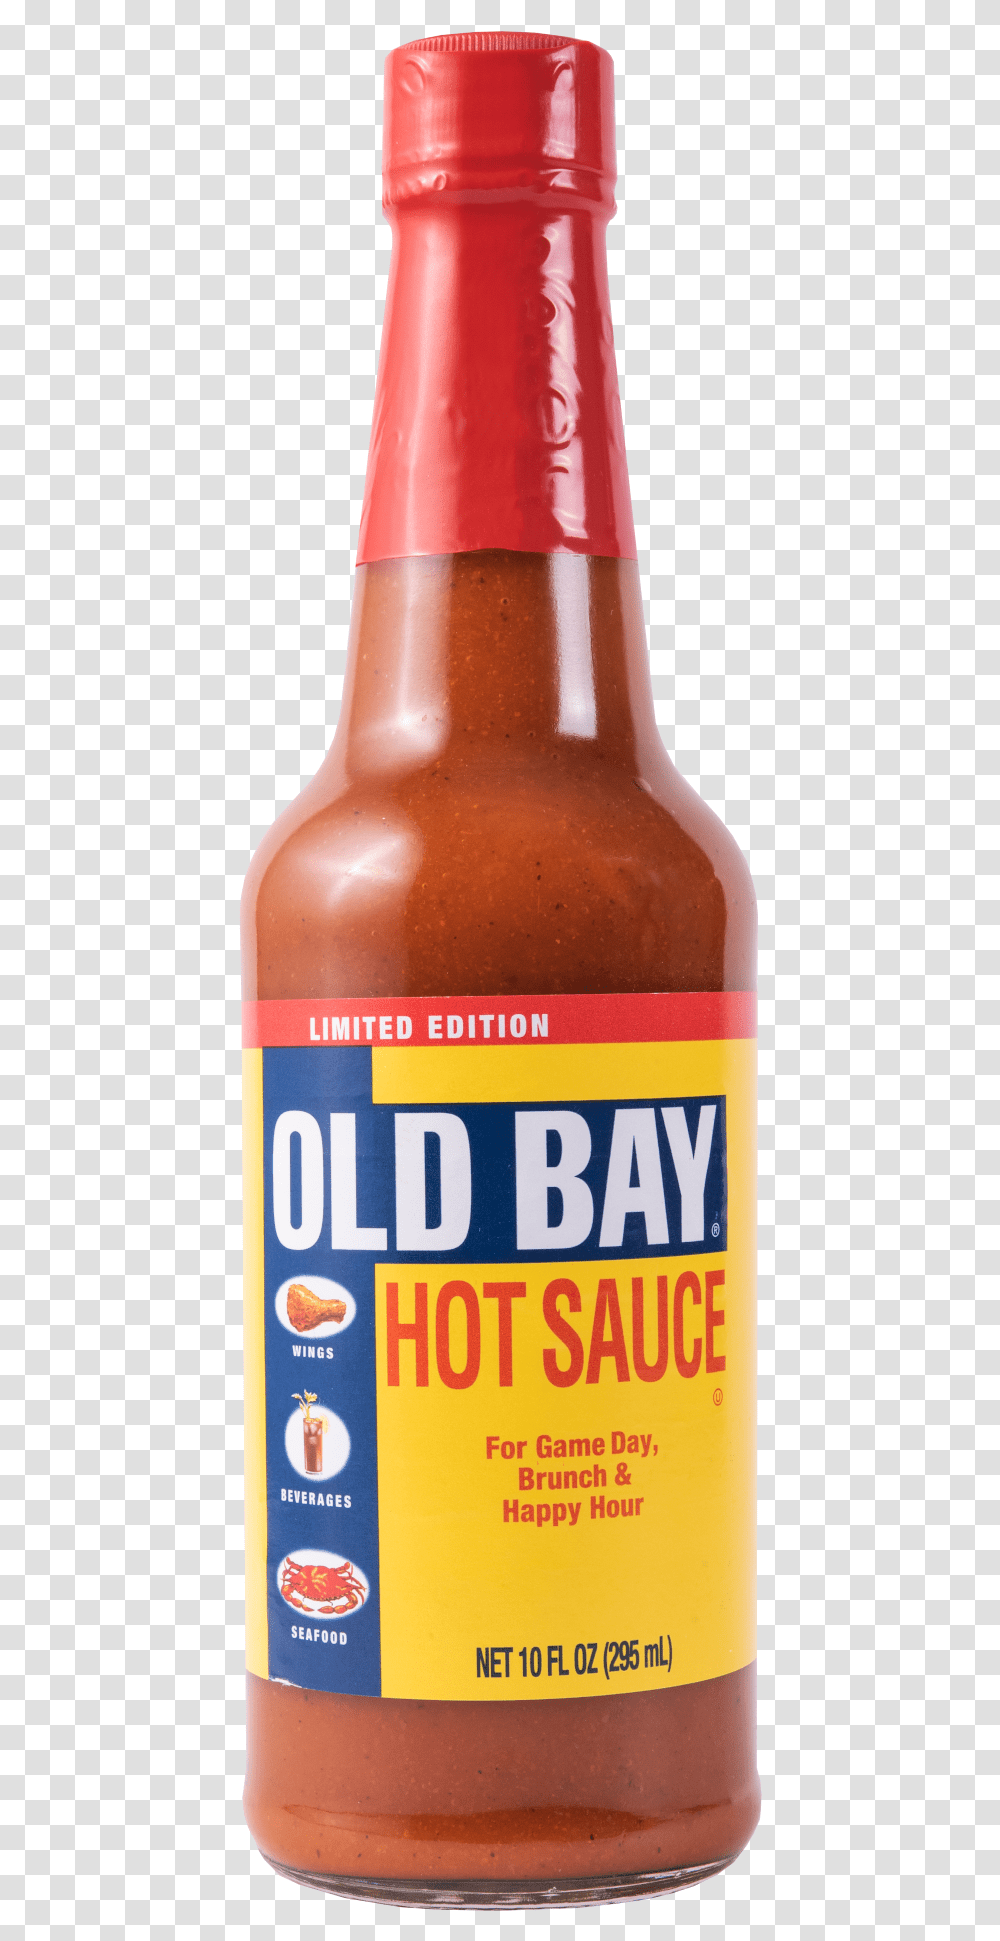 Old Bay Hot Sauce Mccormick, Bottle, Beer, Alcohol, Beverage Transparent Png